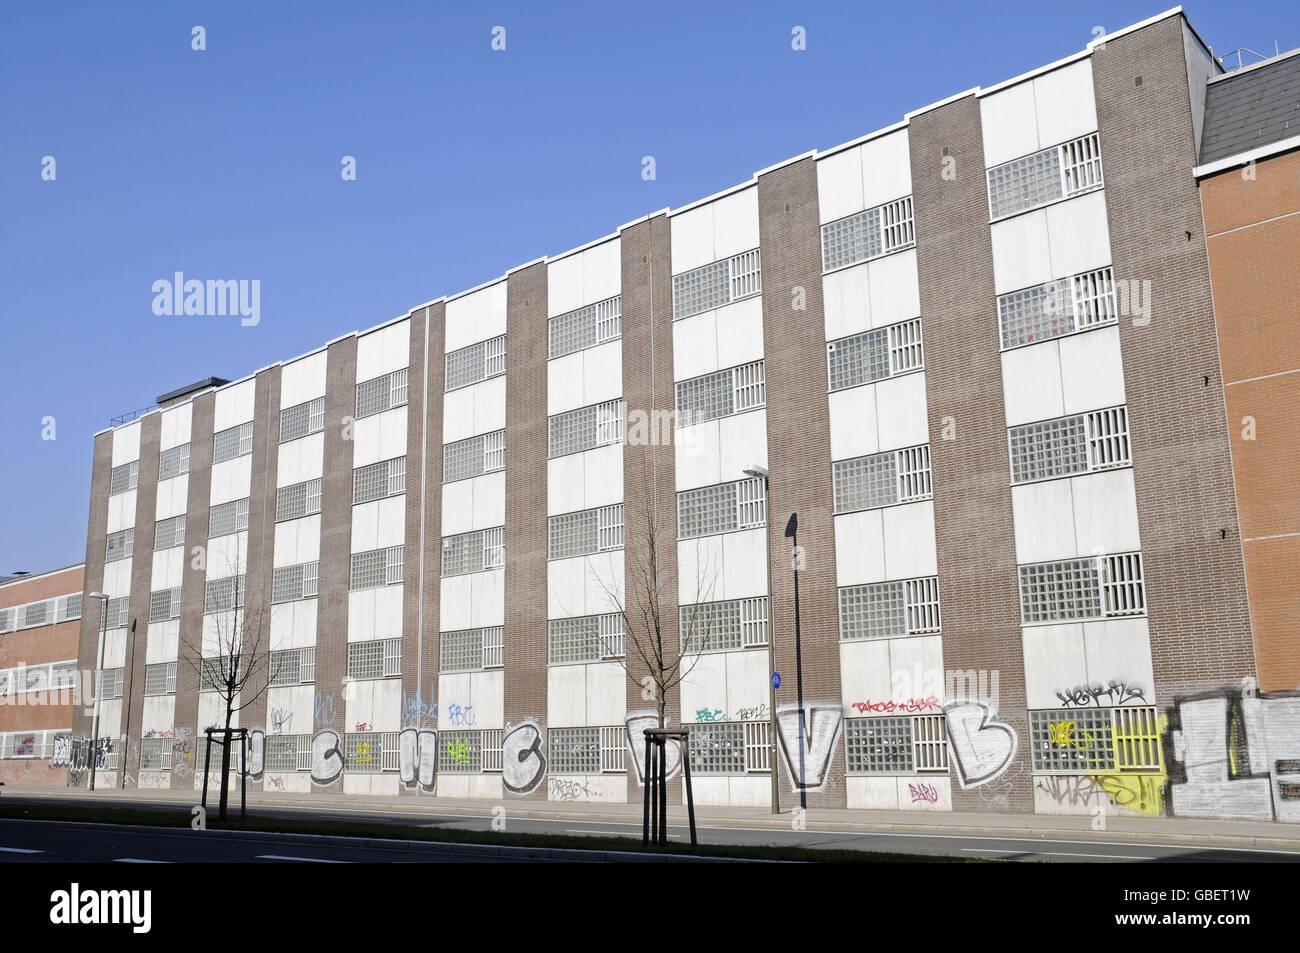 Prison, Dortmund, North Rhine-Westphalia, Germany Stock Photo